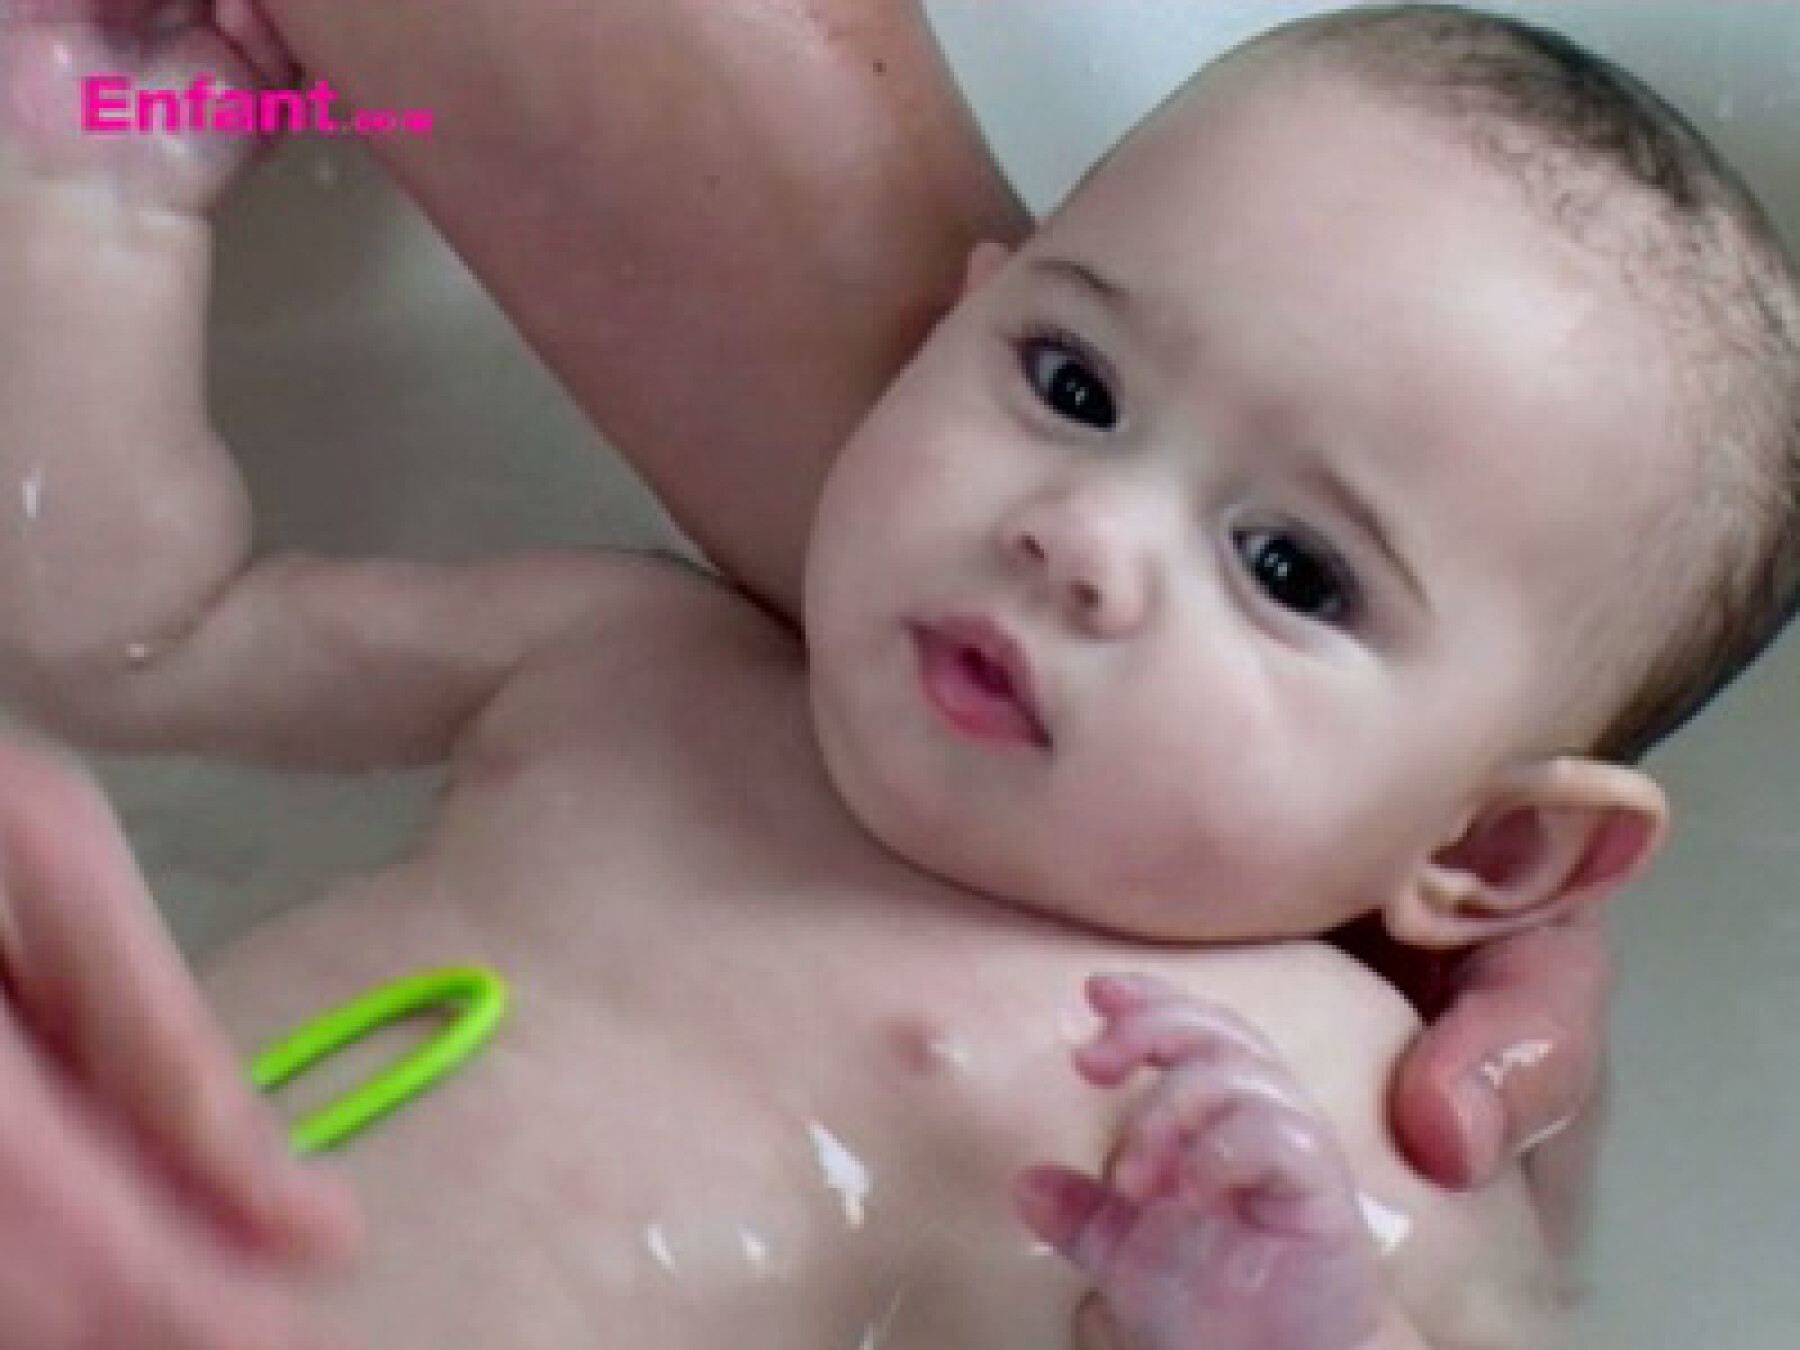 Vidéo: donner le bain à bébé